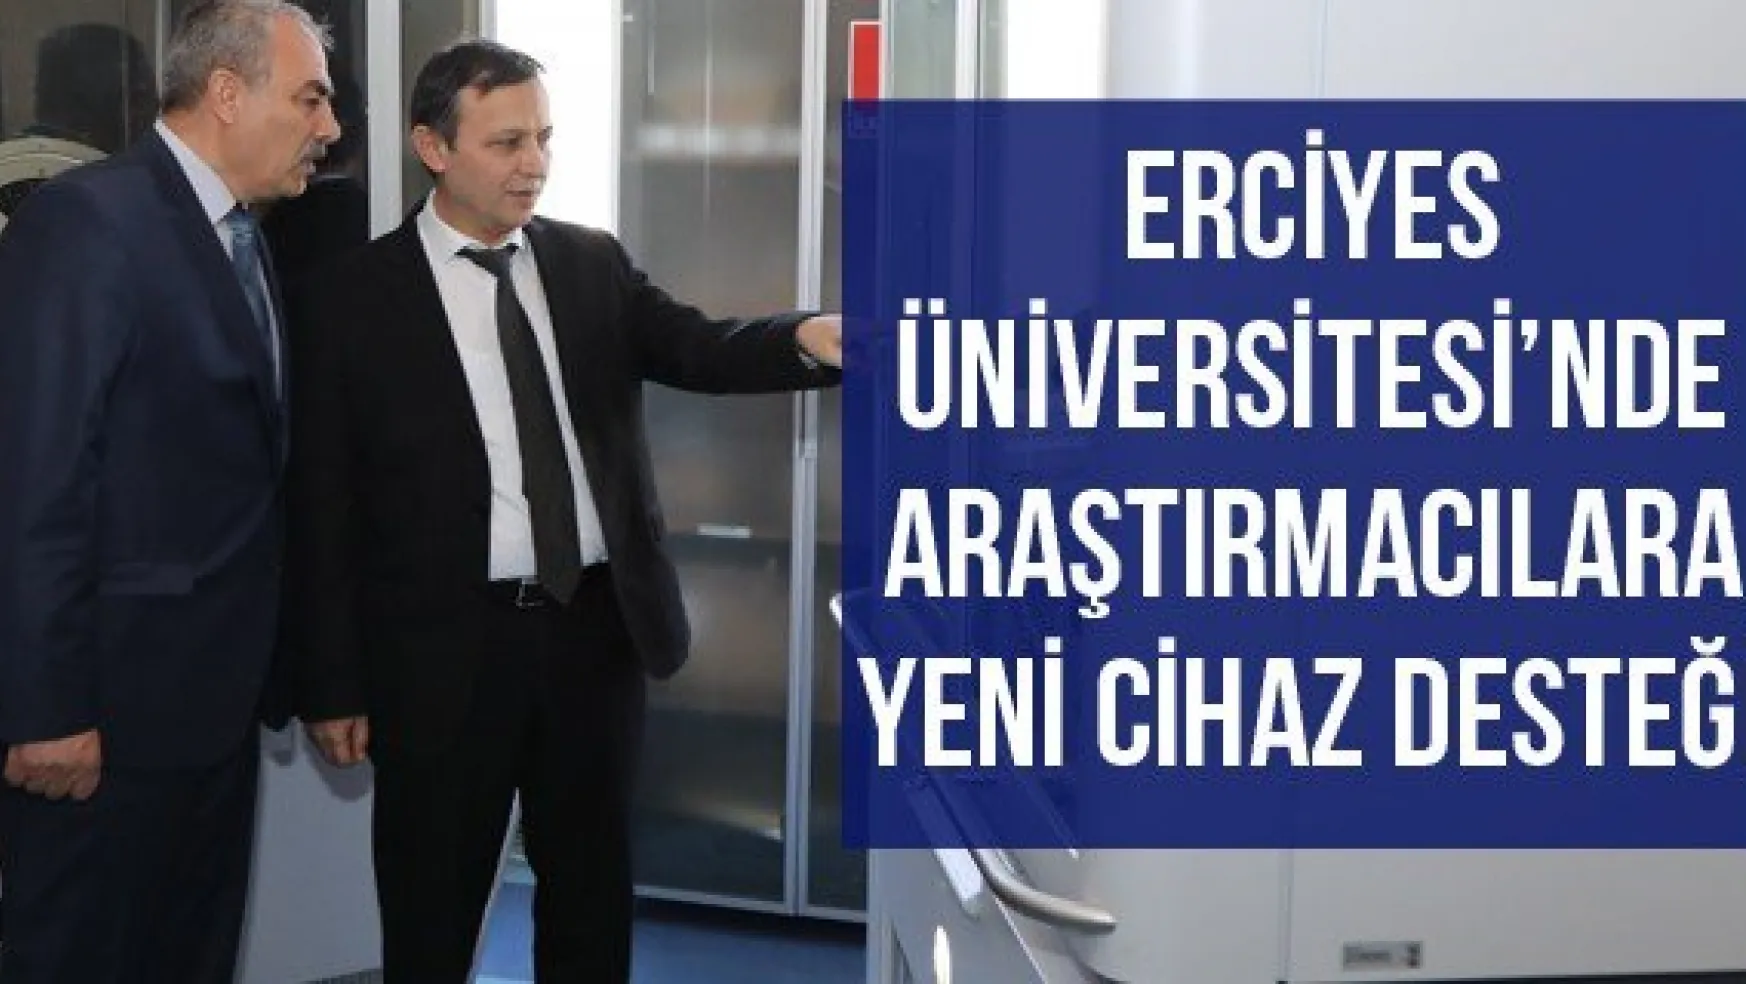 Erciyes Üniversitesi'nde Araştırmacılara Yeni Cihaz Desteği